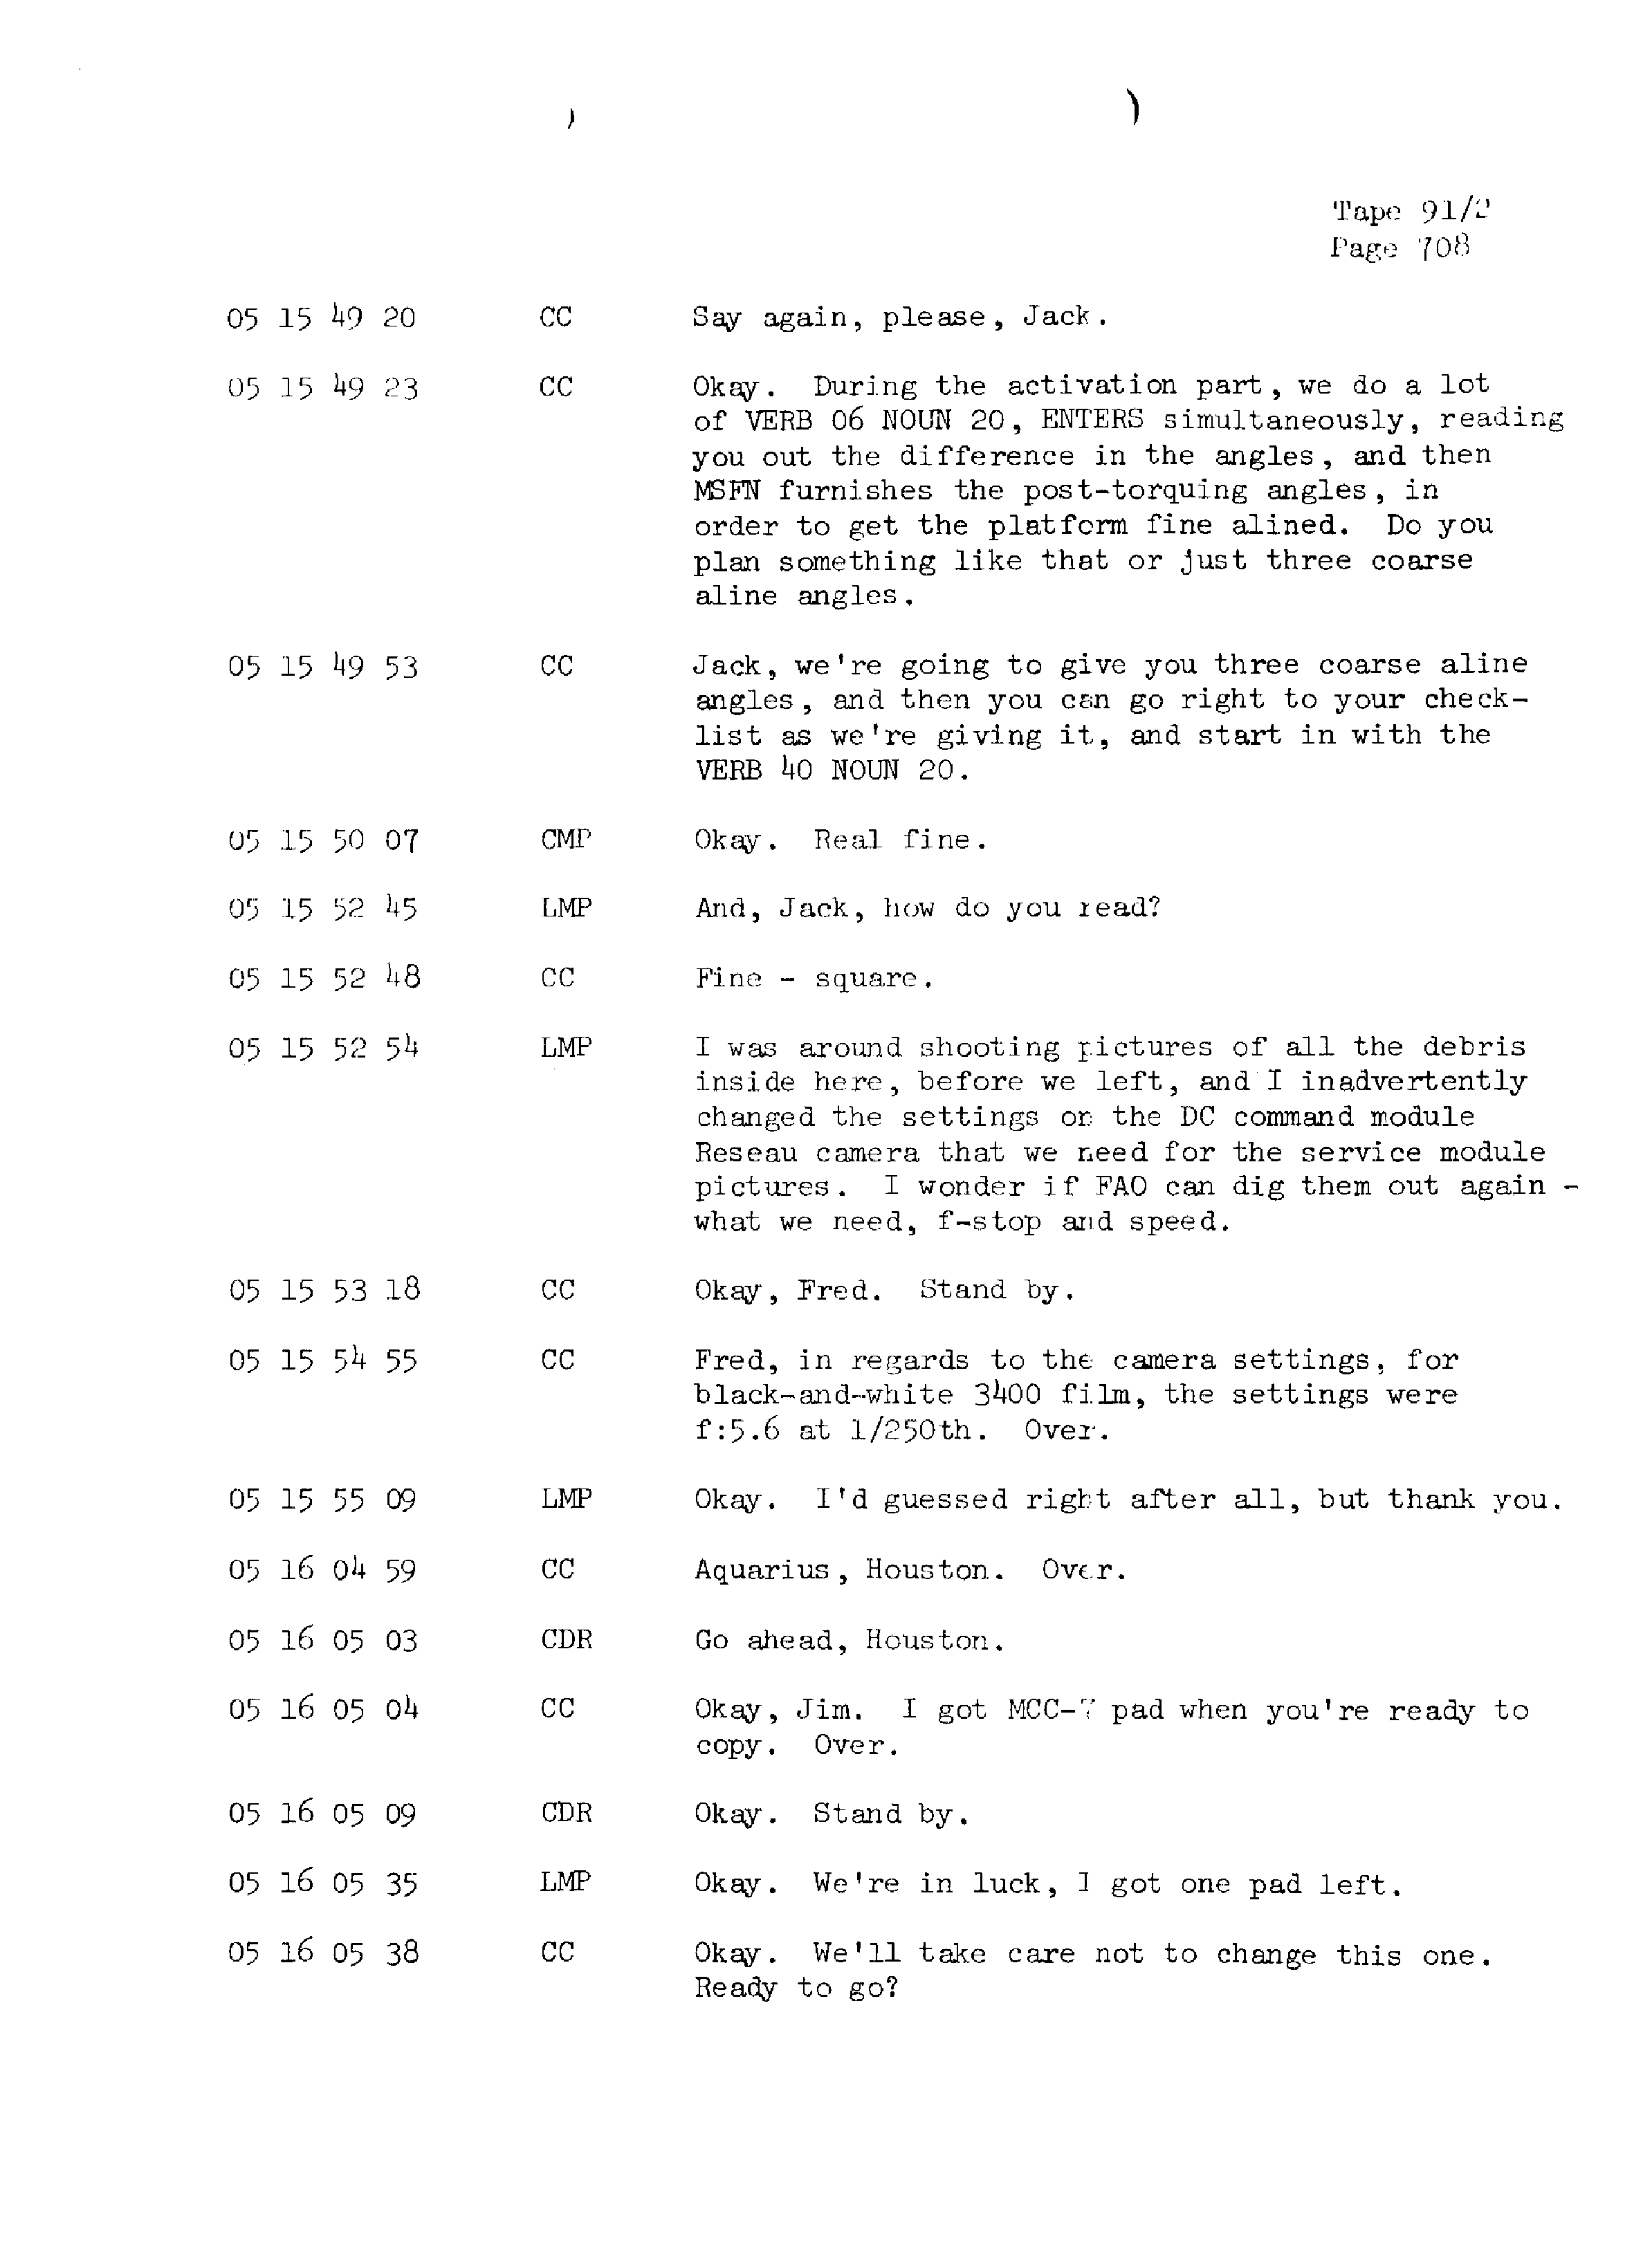 Page 715 of Apollo 13’s original transcript